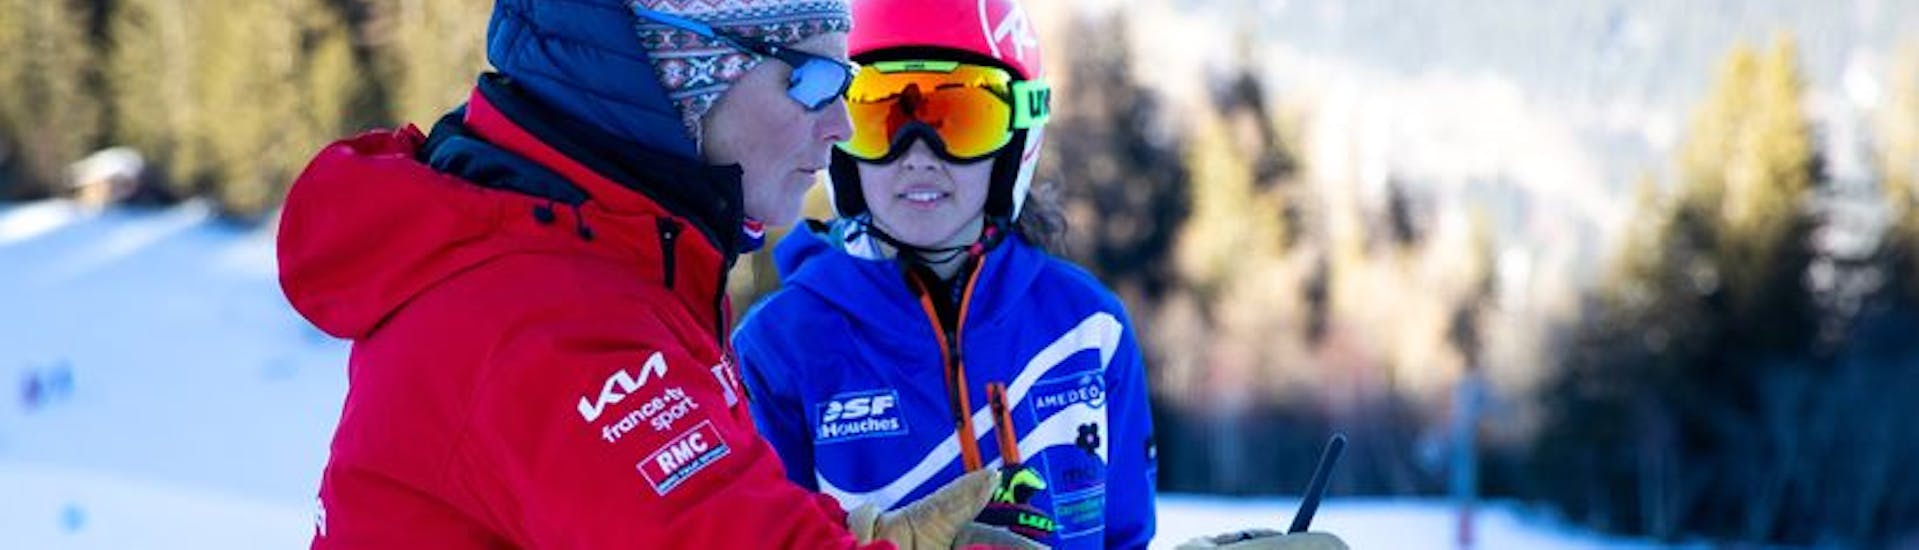 Clases de esquí privadas para niños a partir de 3 años para todos los niveles con ESF Les Houches.